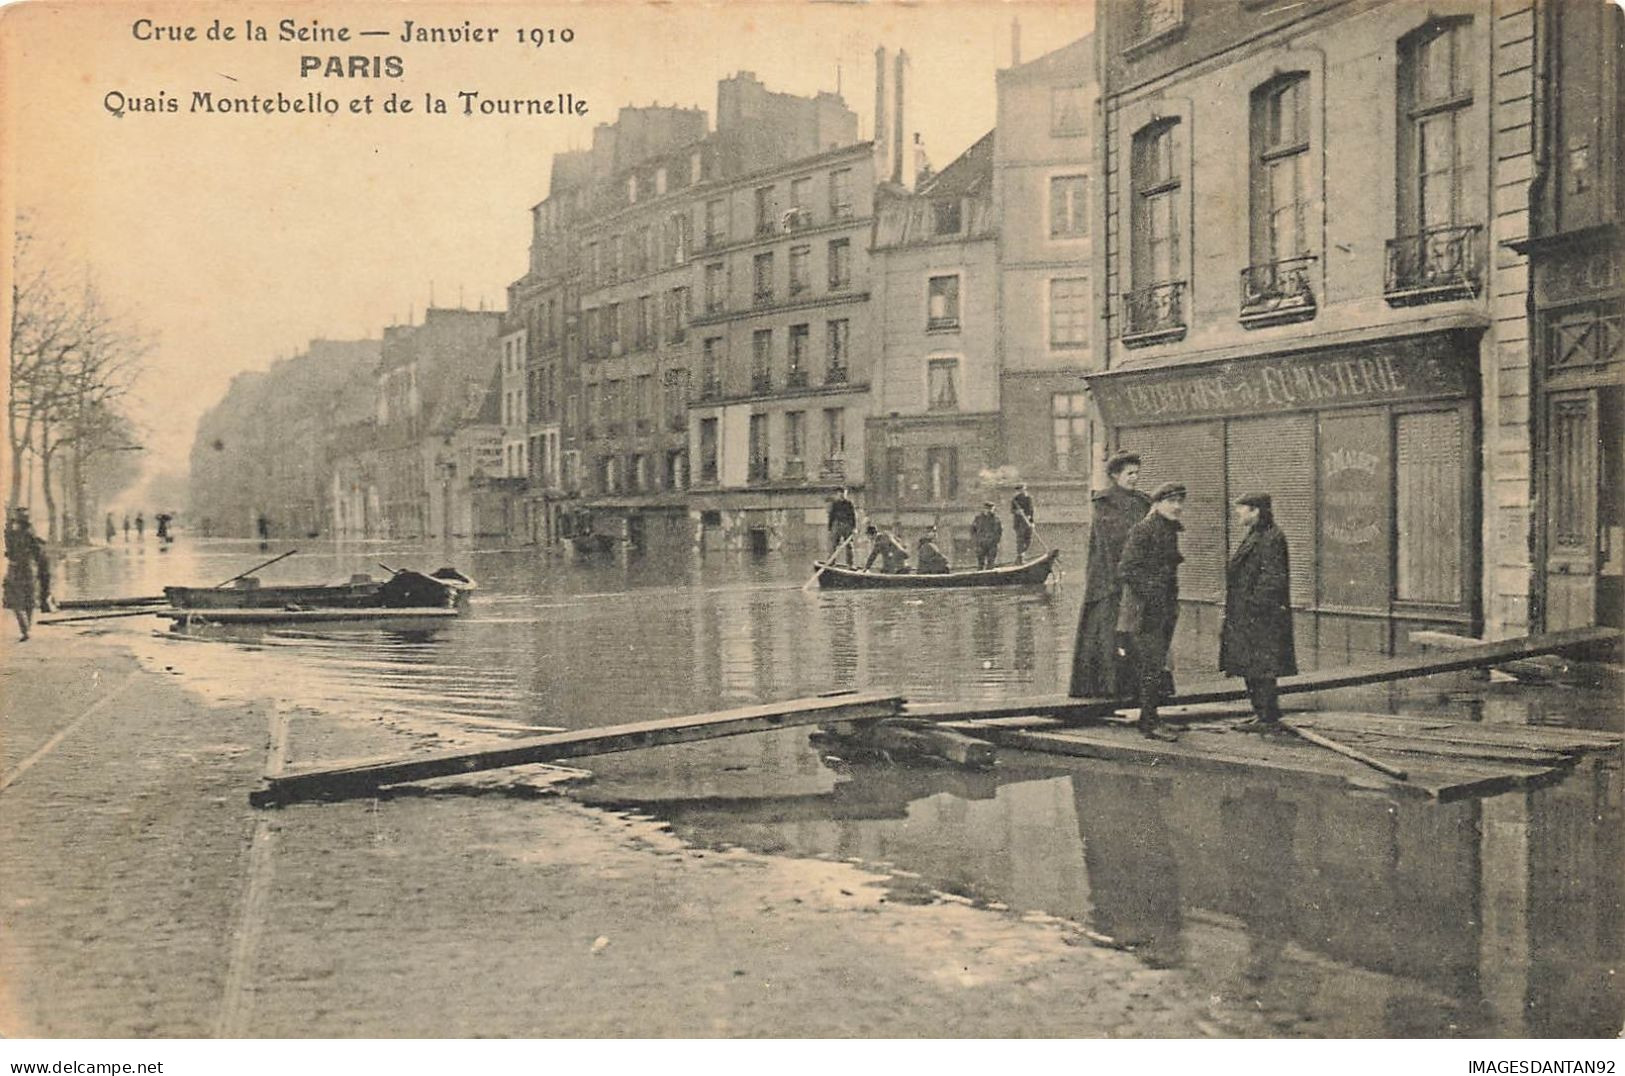 75 PARIS #22791 CRUE DE LA SEINE INONDATIONS 1910 QUAIS MONTEBELLO ET LA TOURNELLE BARQUE CANOT - Überschwemmung 1910